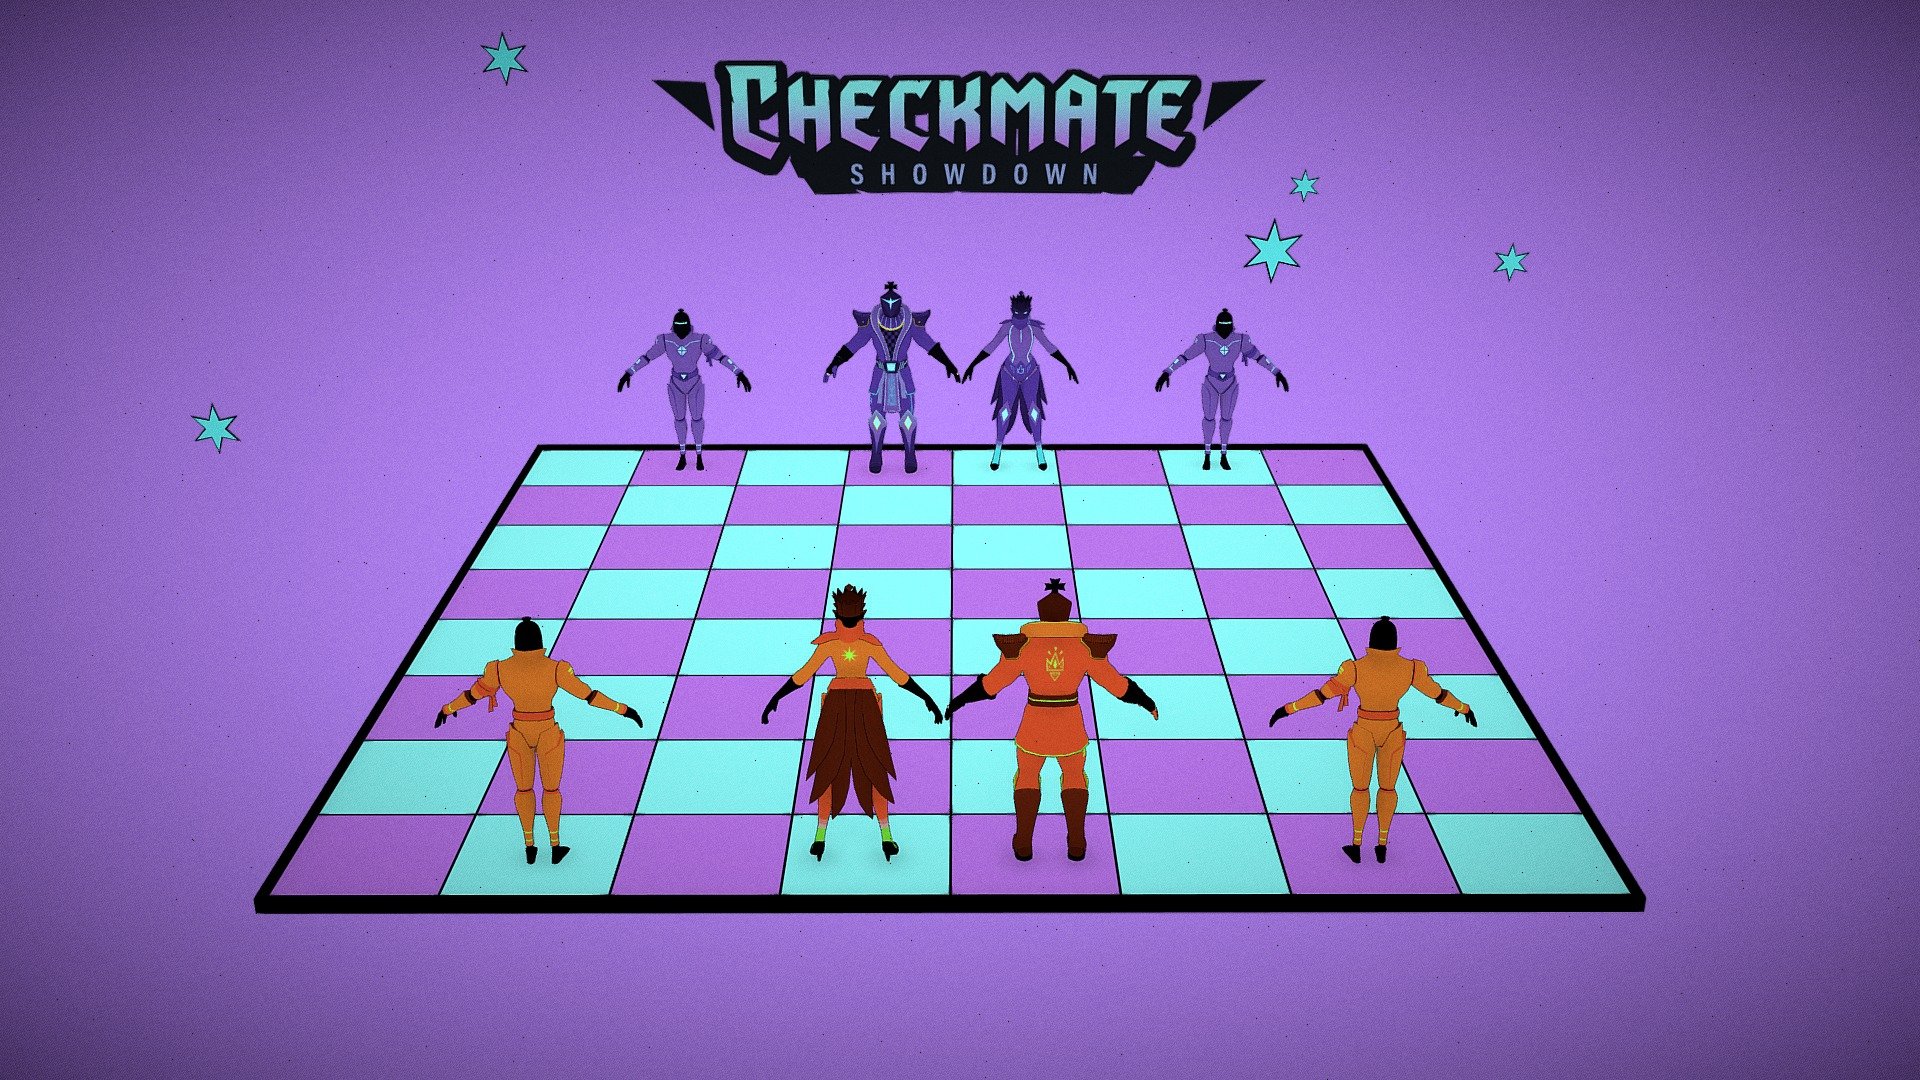 Checkmate Showdown Characters - 3D model by marie_pier_bouffard  (@marie_pier_bouffard) [9d3bea8]